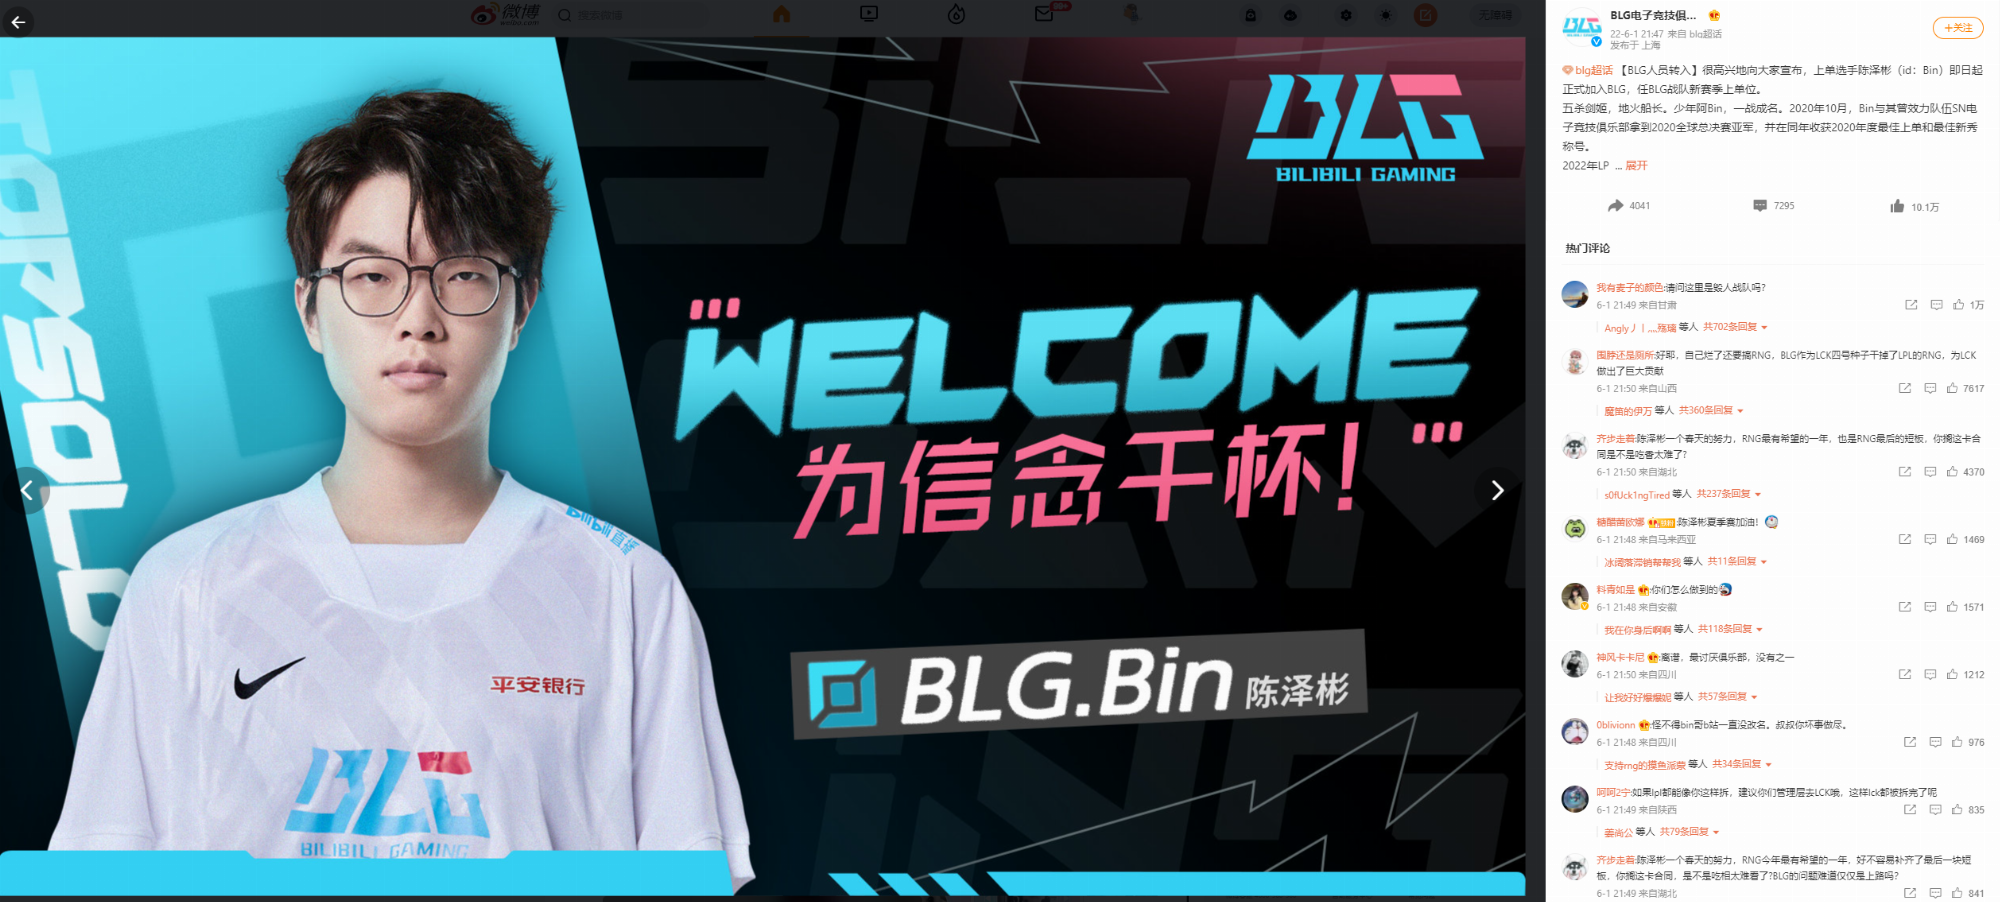 Trang Weibo của BLG đã thông báo chính thức về thương vụ Bin